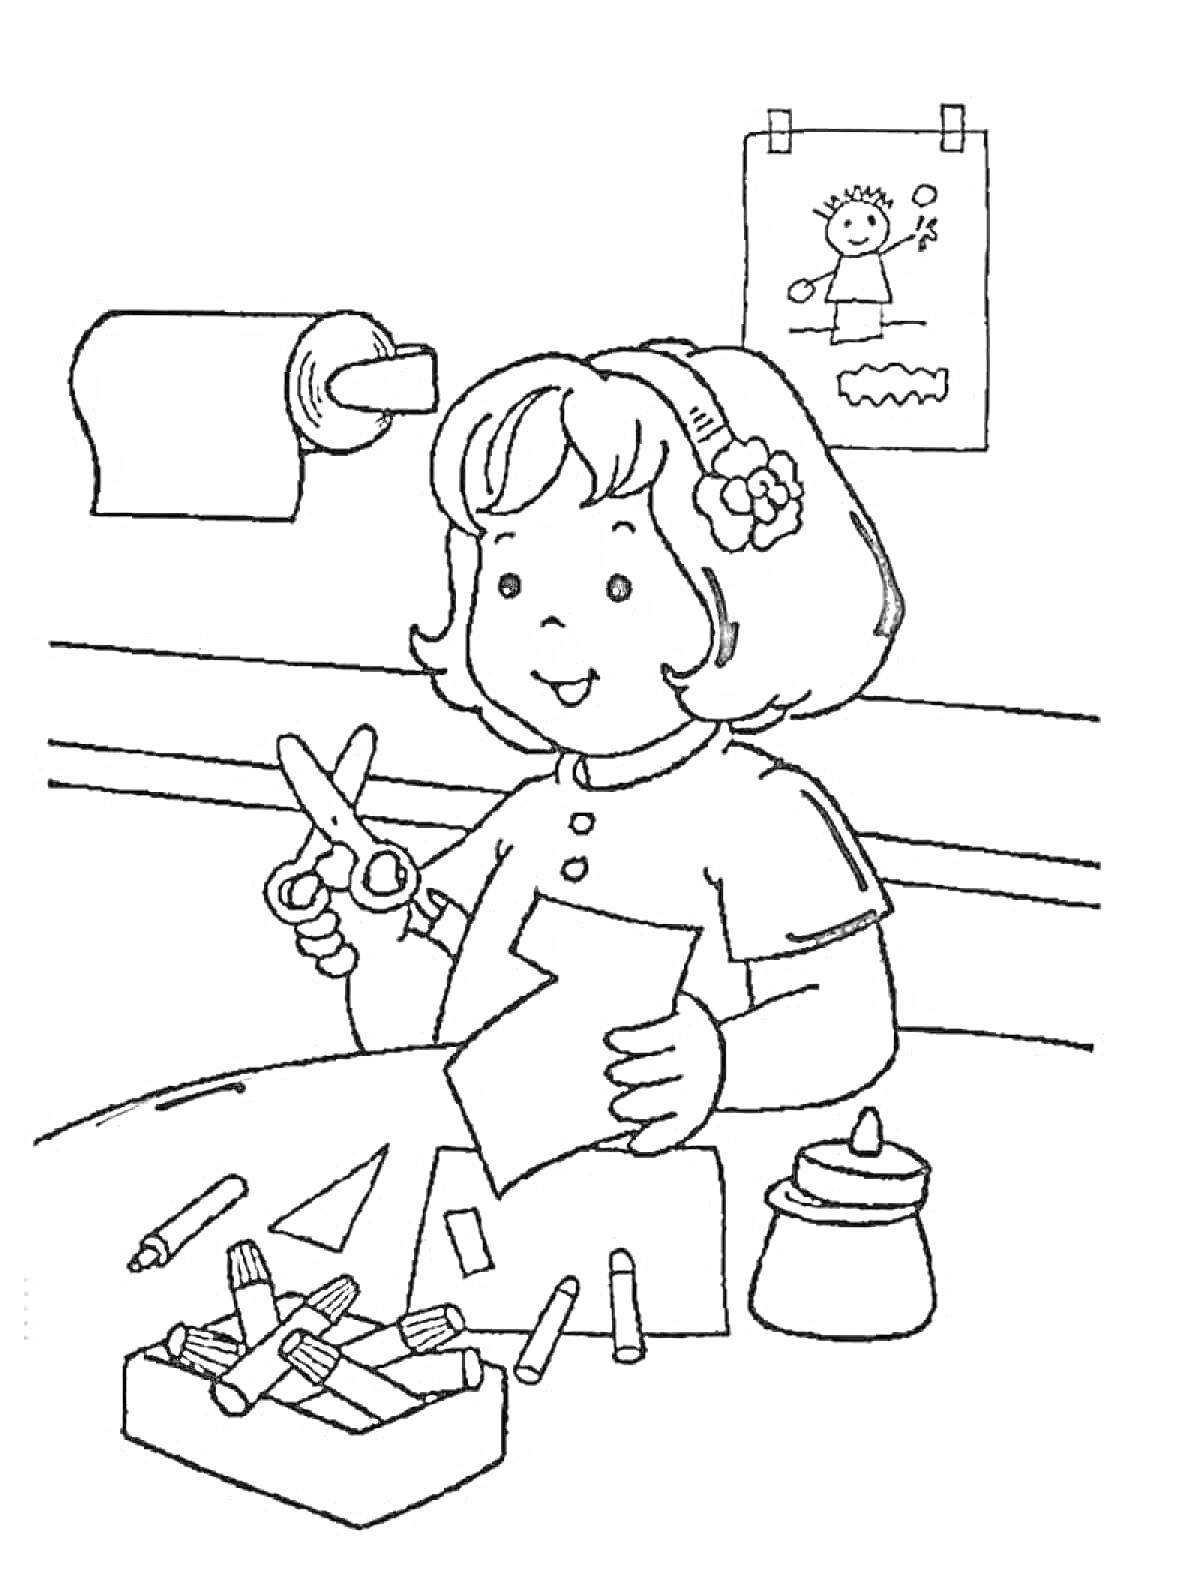 Раскраска Девочка, занимающаяся поделками: ножницы, бумага, карандаши, баночка с клеем, рисунок на стене